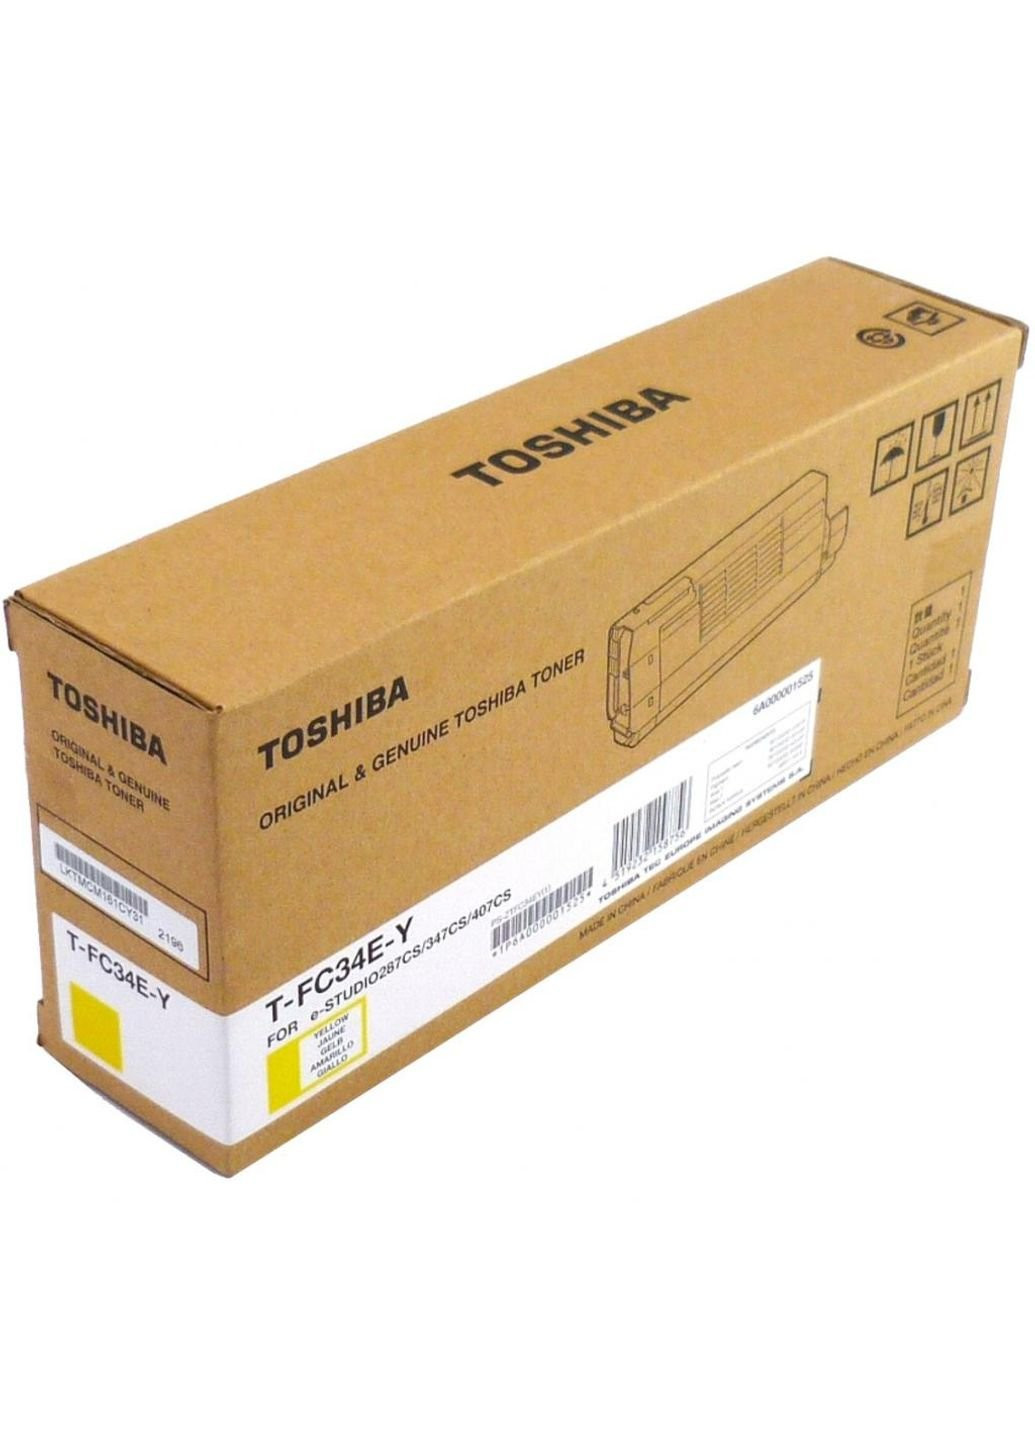 Тонер-картридж (6A000001770) Toshiba t-fc34ey 11.5k yellow (247619424)